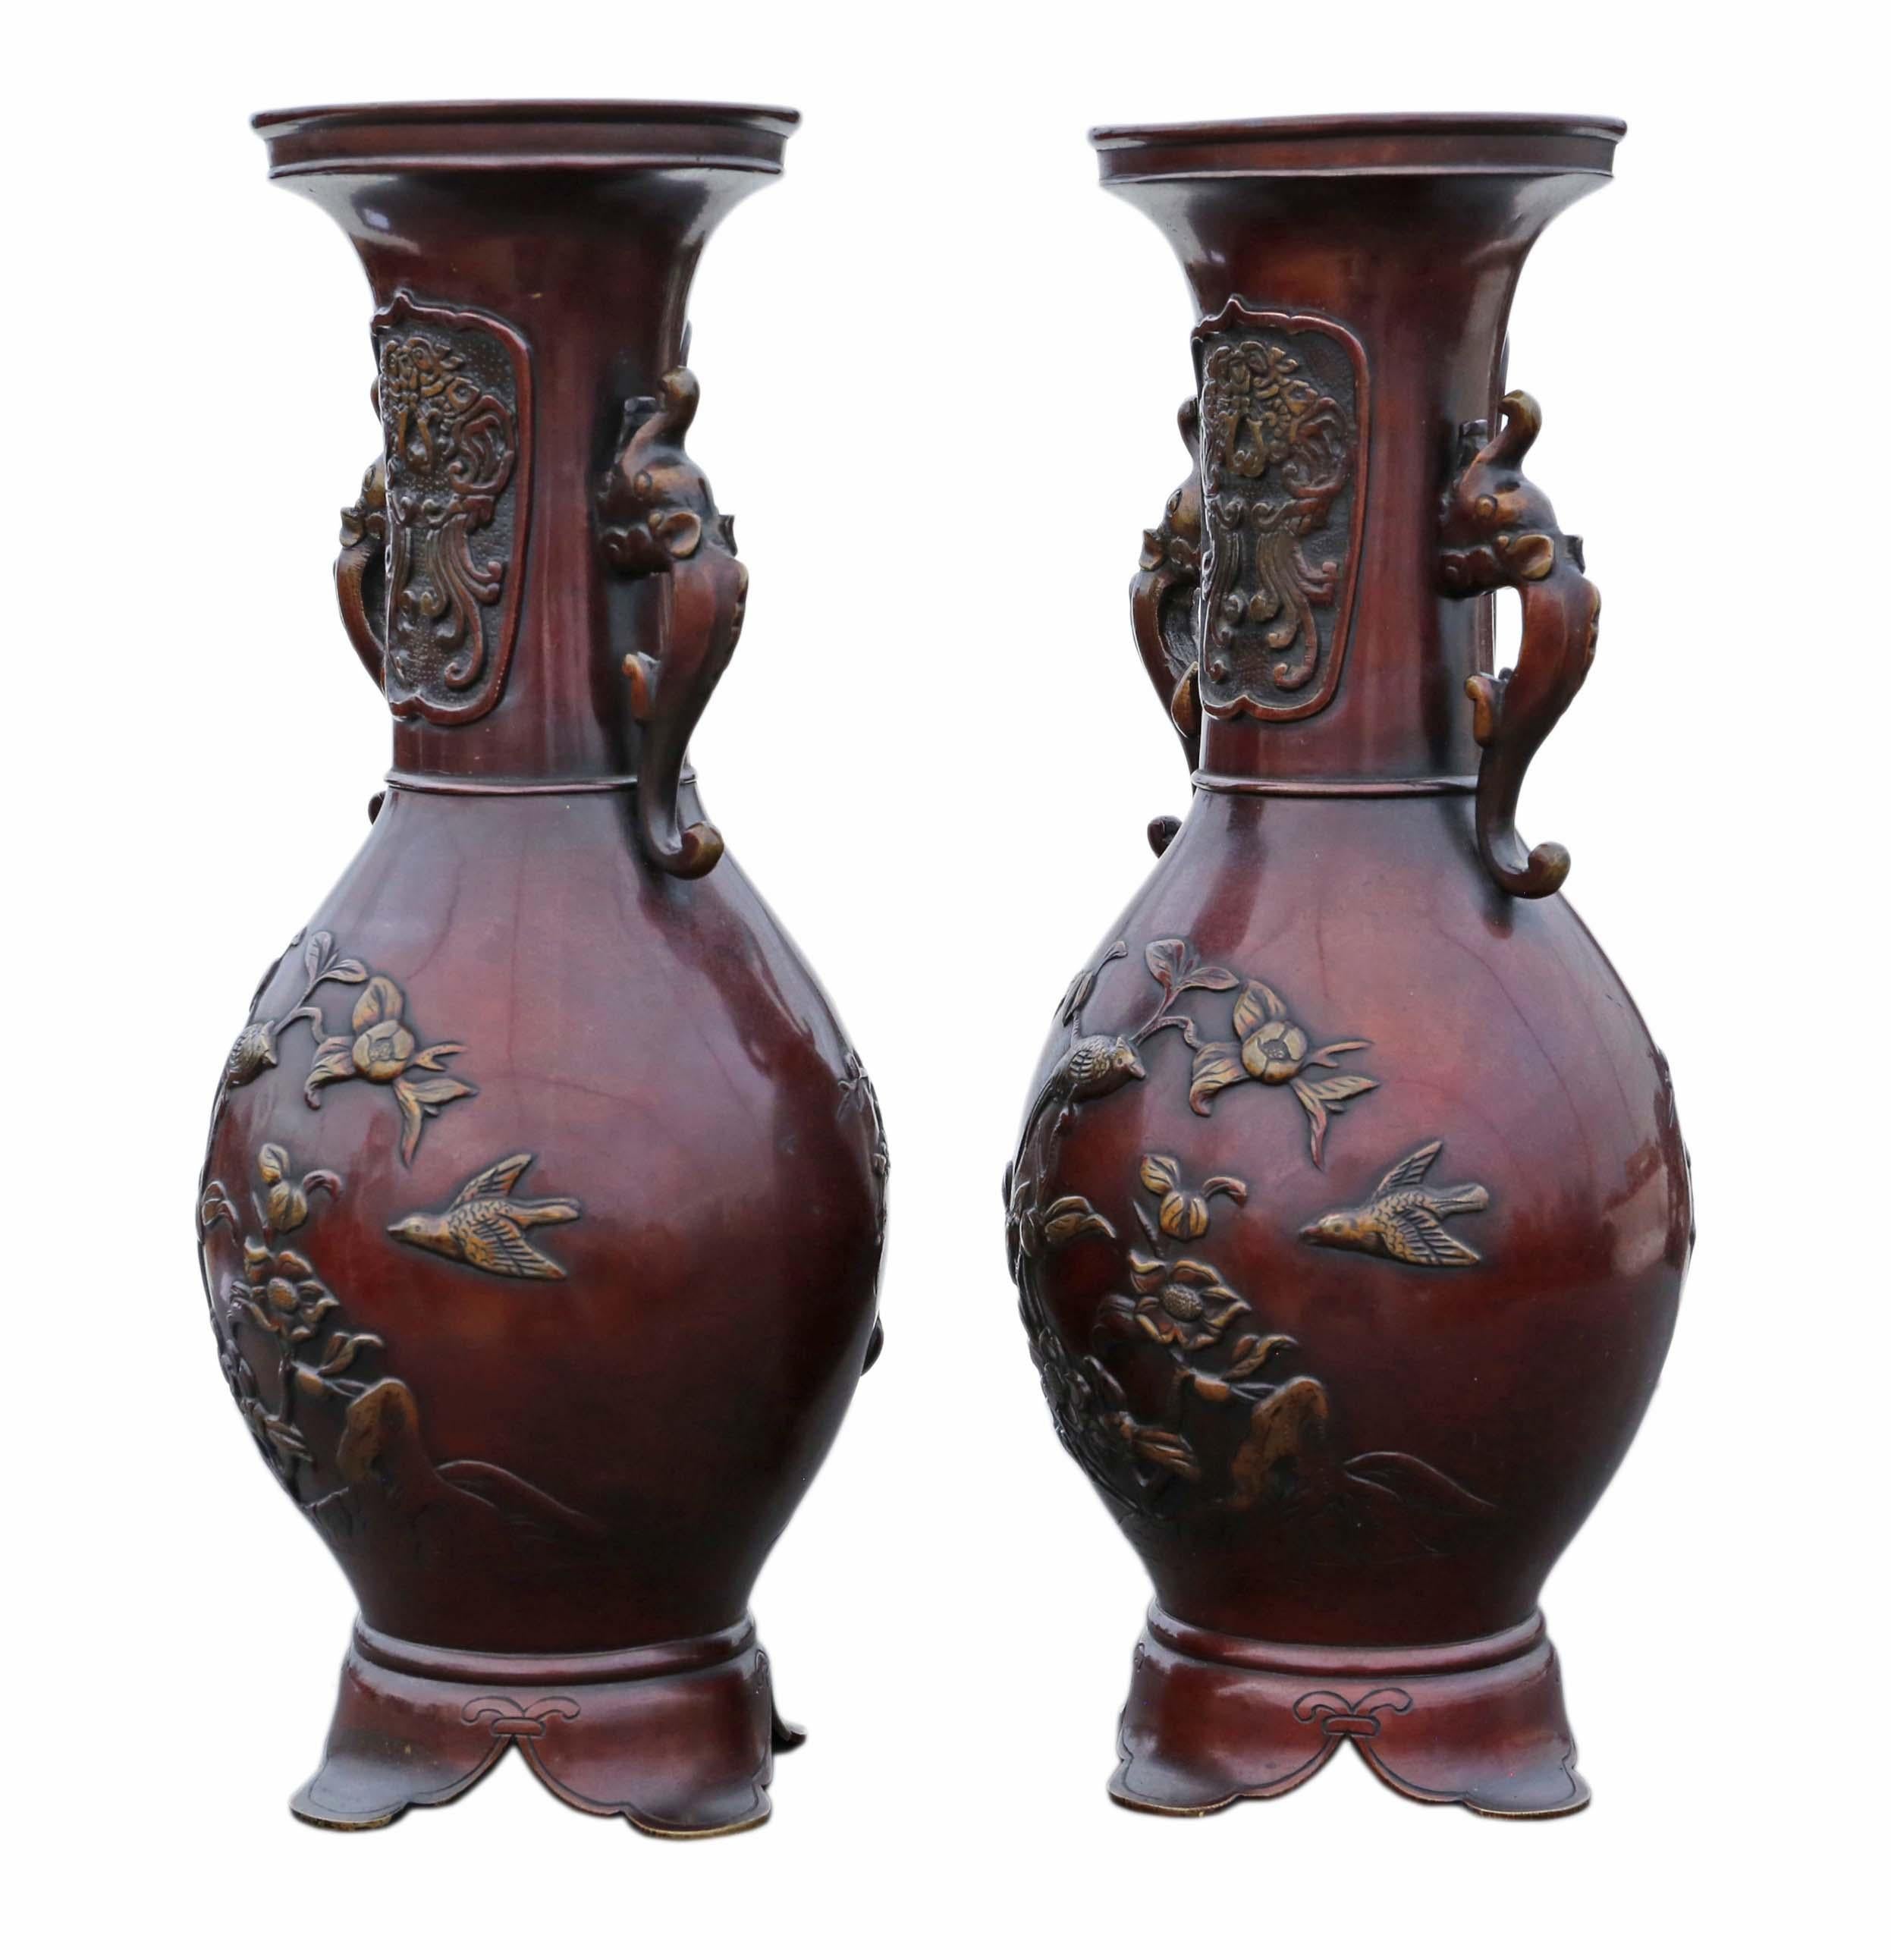 Antike sehr große Paar feine Qualität japanischen Bronze-Vasen C1910 Meiji-Periode. 

An der richtigen Stelle würde es fantastisch aussehen. Seltenes großes Format und Design.

Maximale Gesamtabmessungen: 35cmH x 14cm Durchmesser. Wiegen jeweils